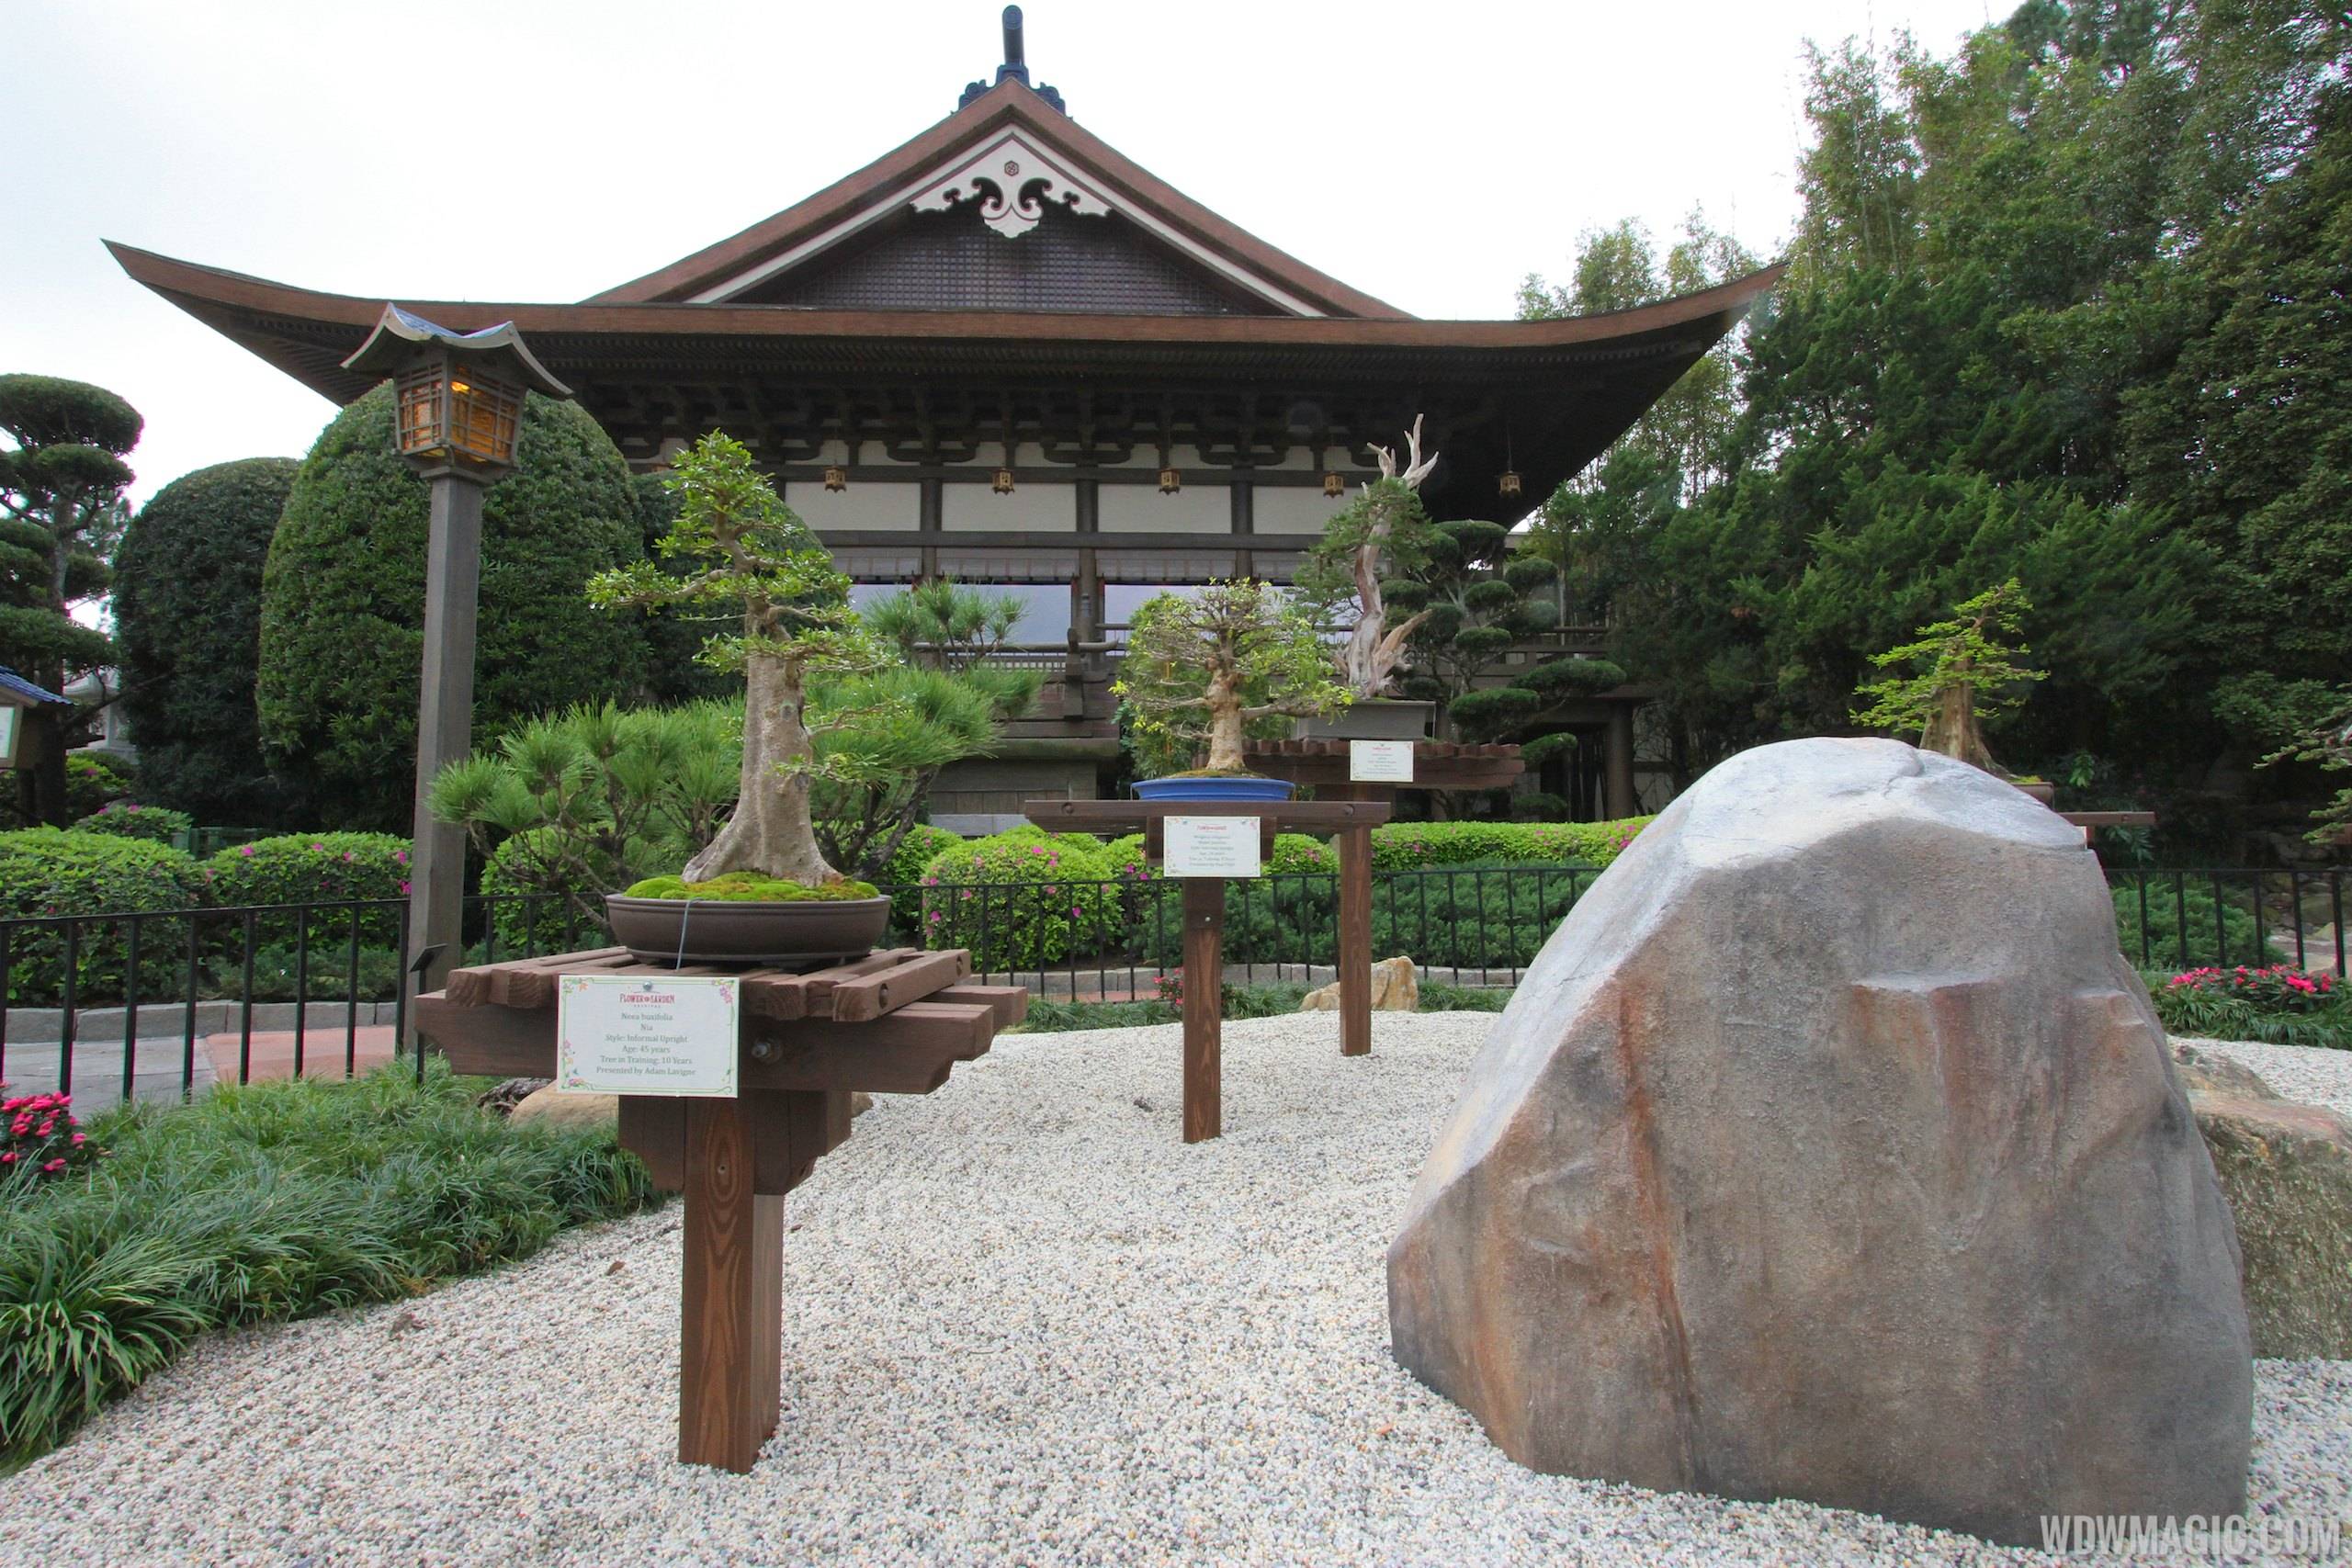 2014 Epcot Flower and Garden Festival - Japan Pavilion bonsai